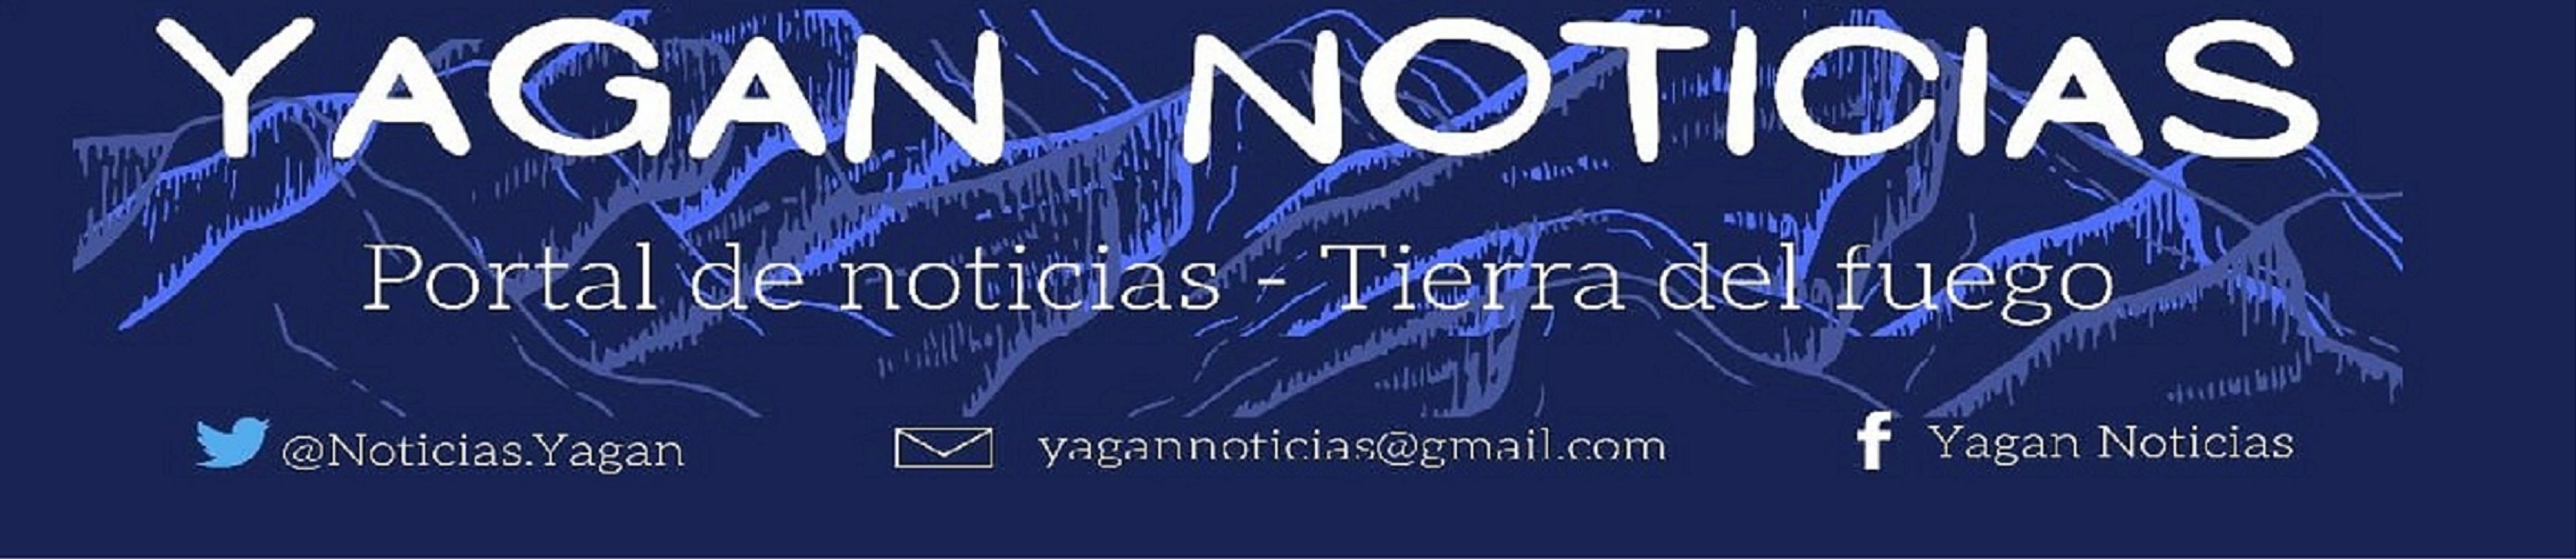 yagannoticias.com.ar